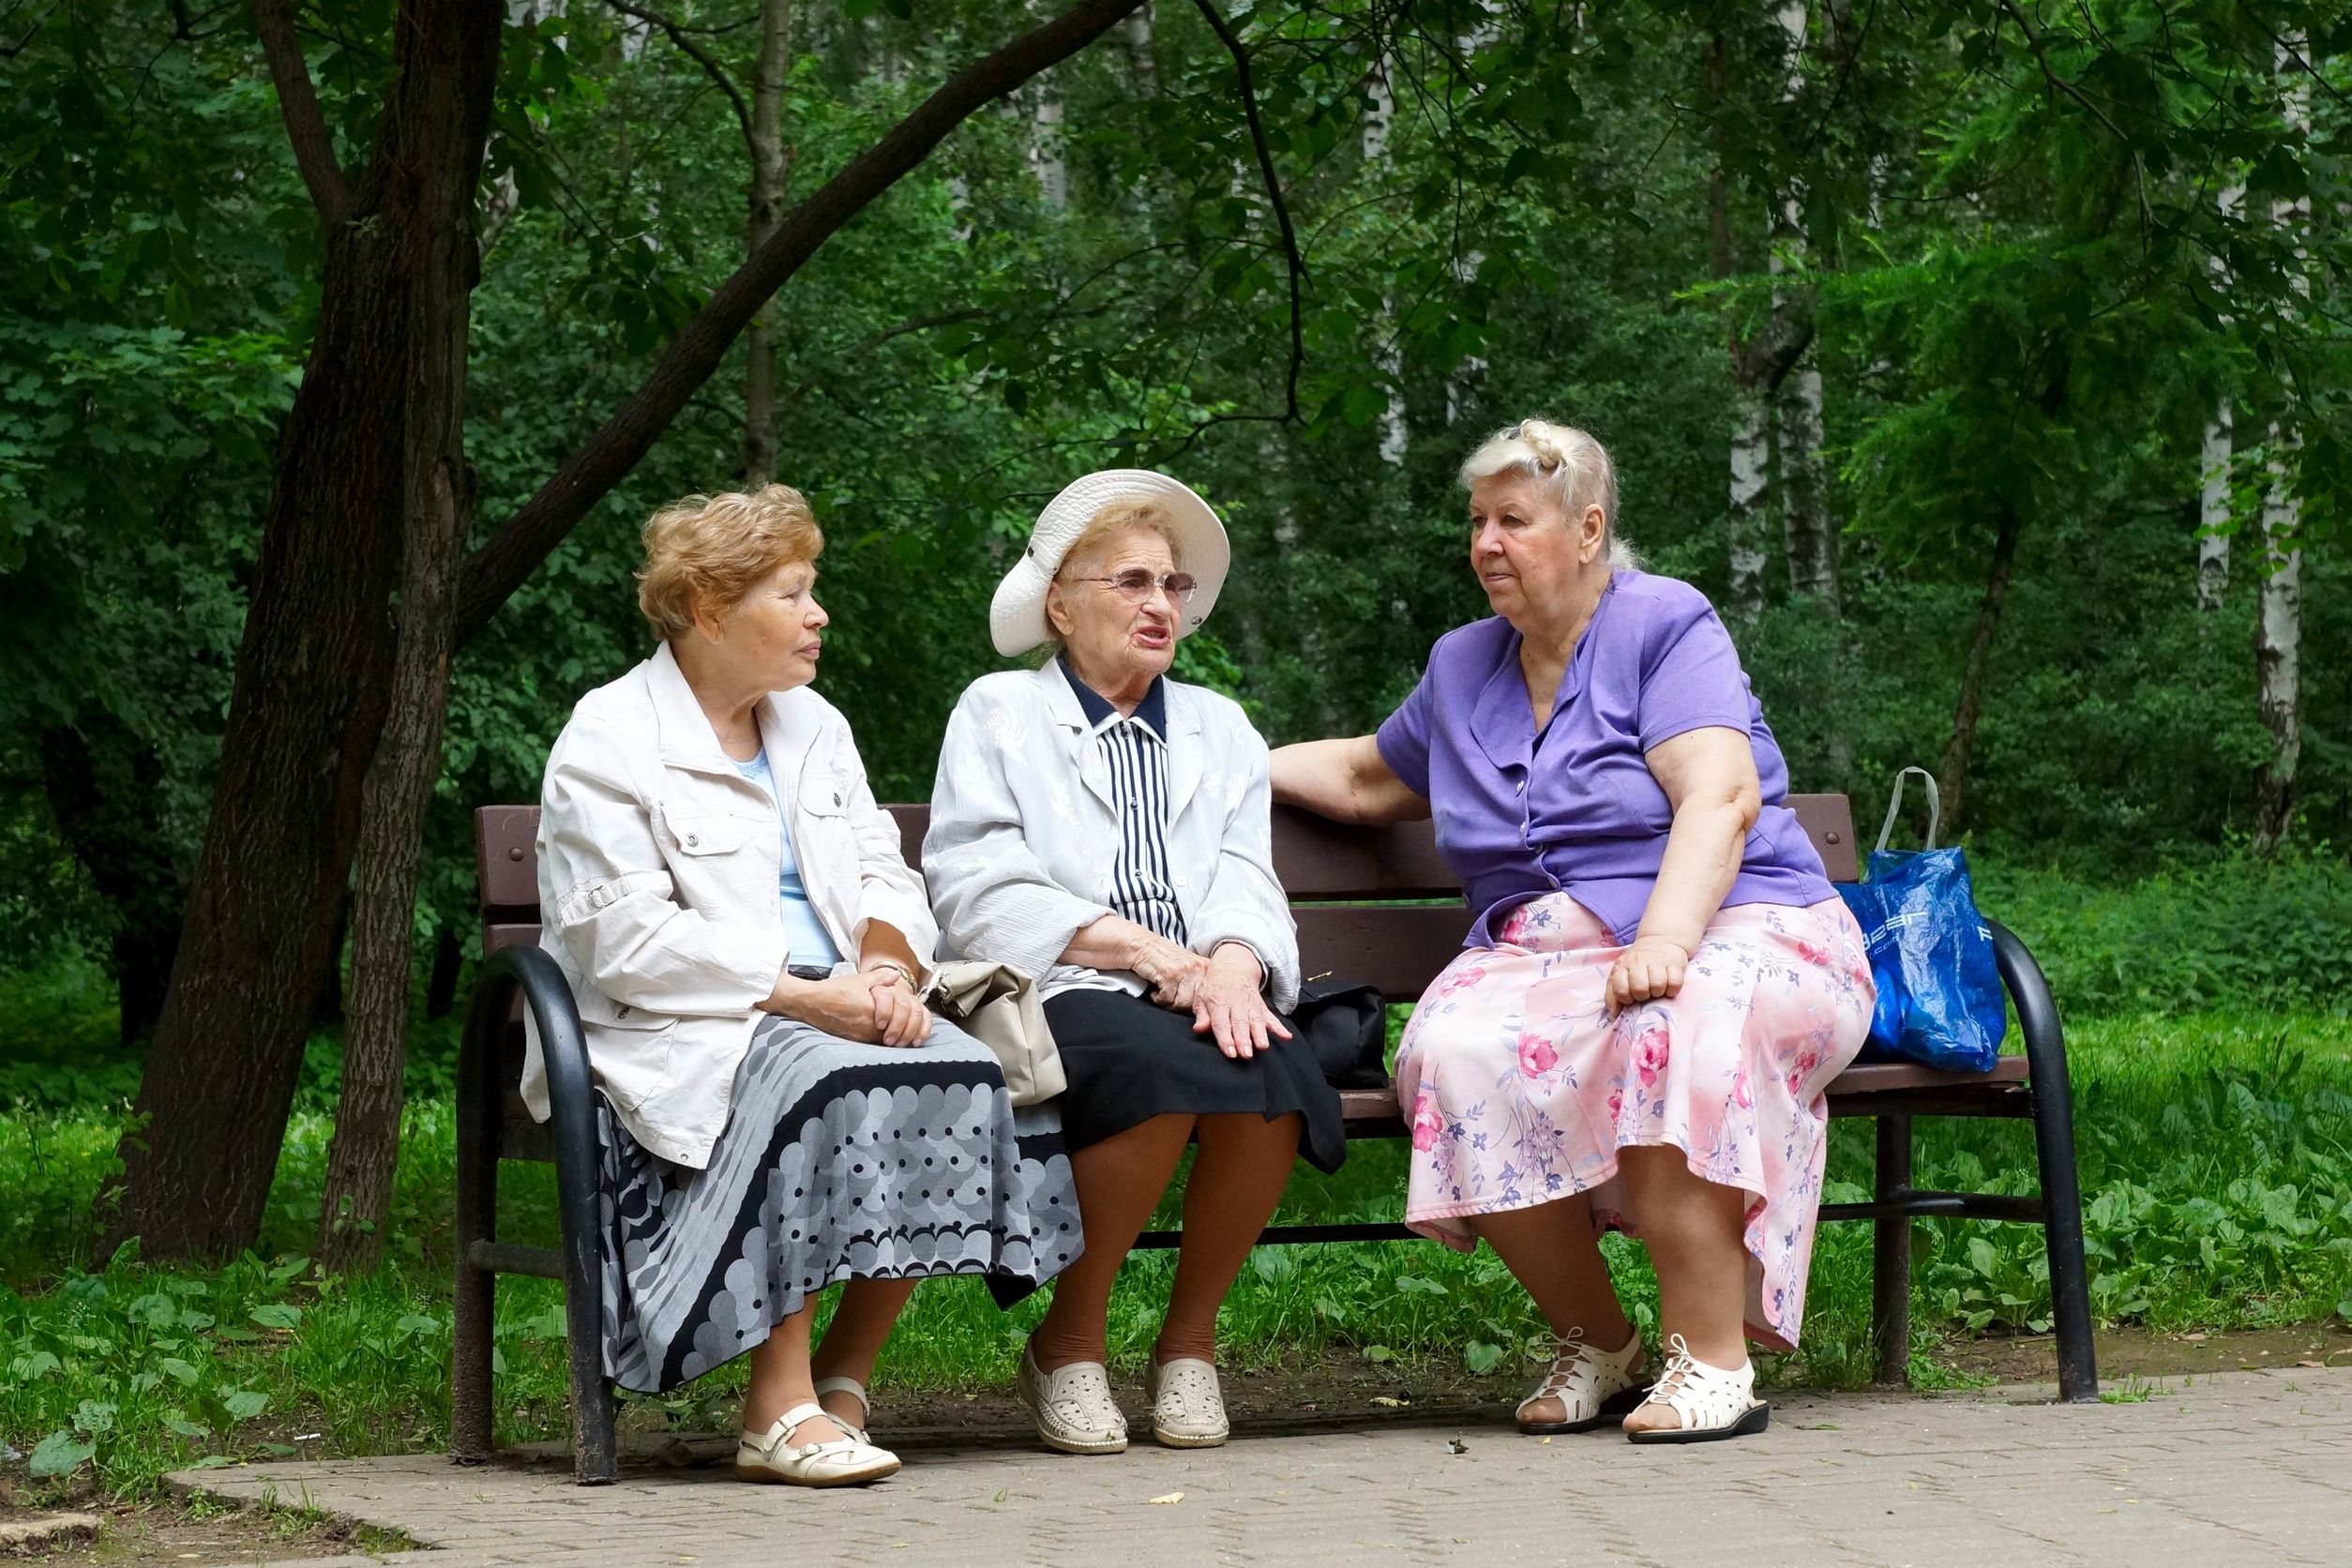 Социальные путевки пенсионерам москвы